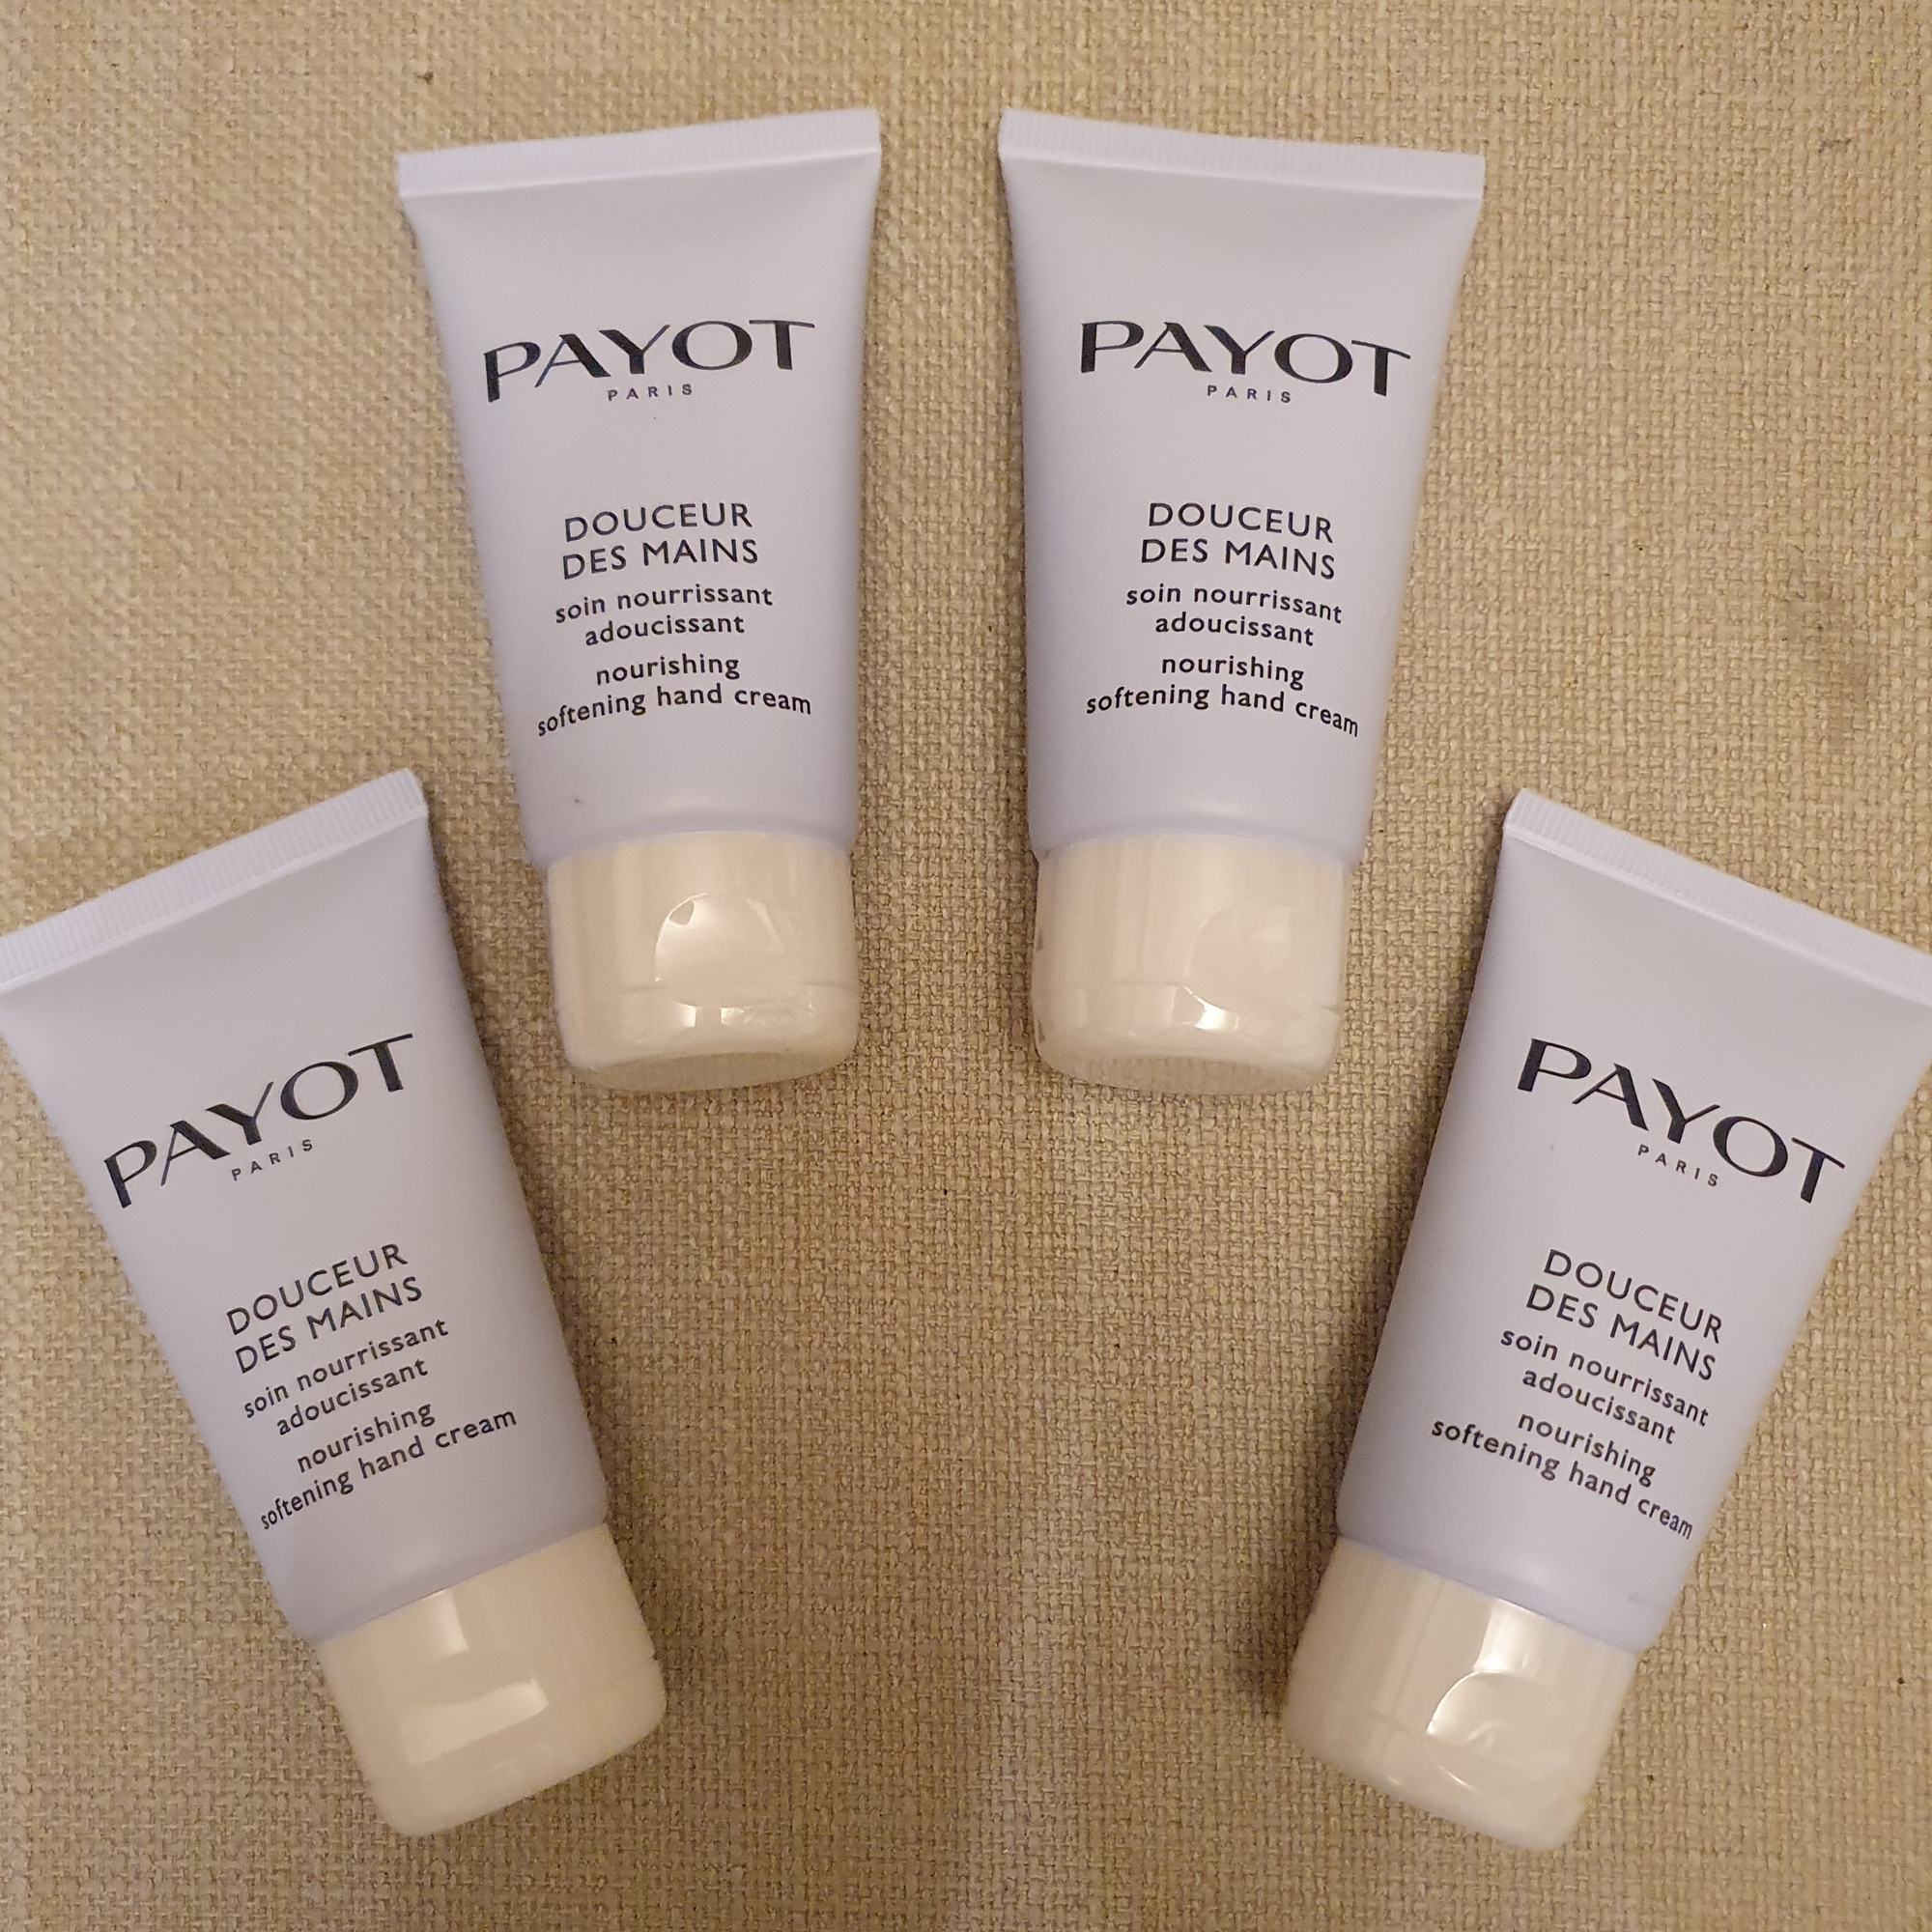 Payot Paris facial products
